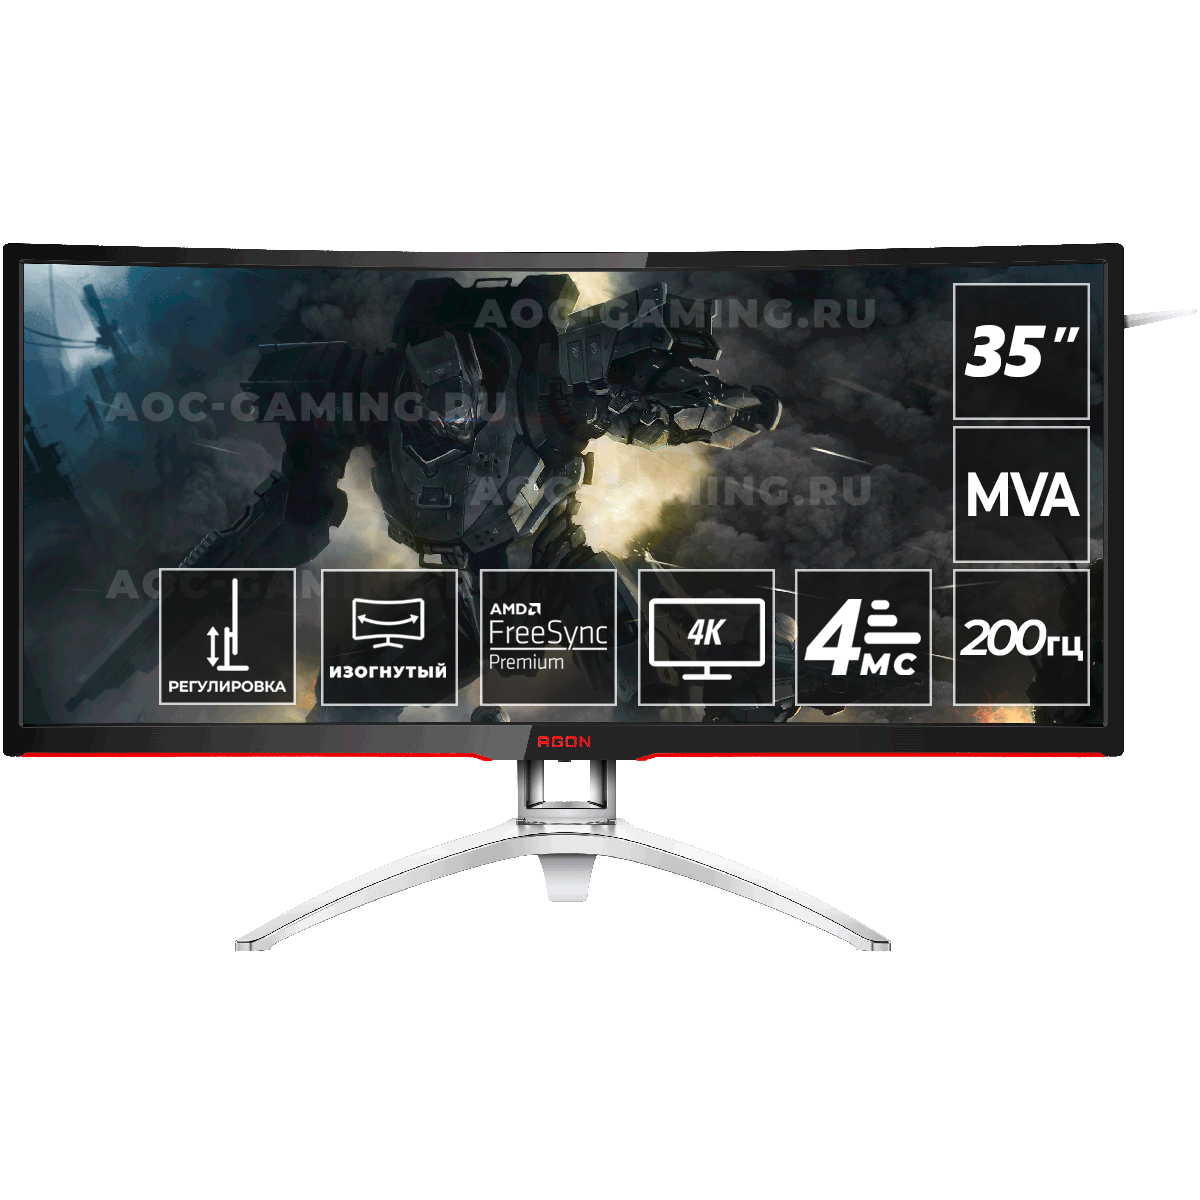 Игровой монитор AOC AGON AG352QCX в официальном интернет магазине AGONBYAOC.ru (AOC Россия)